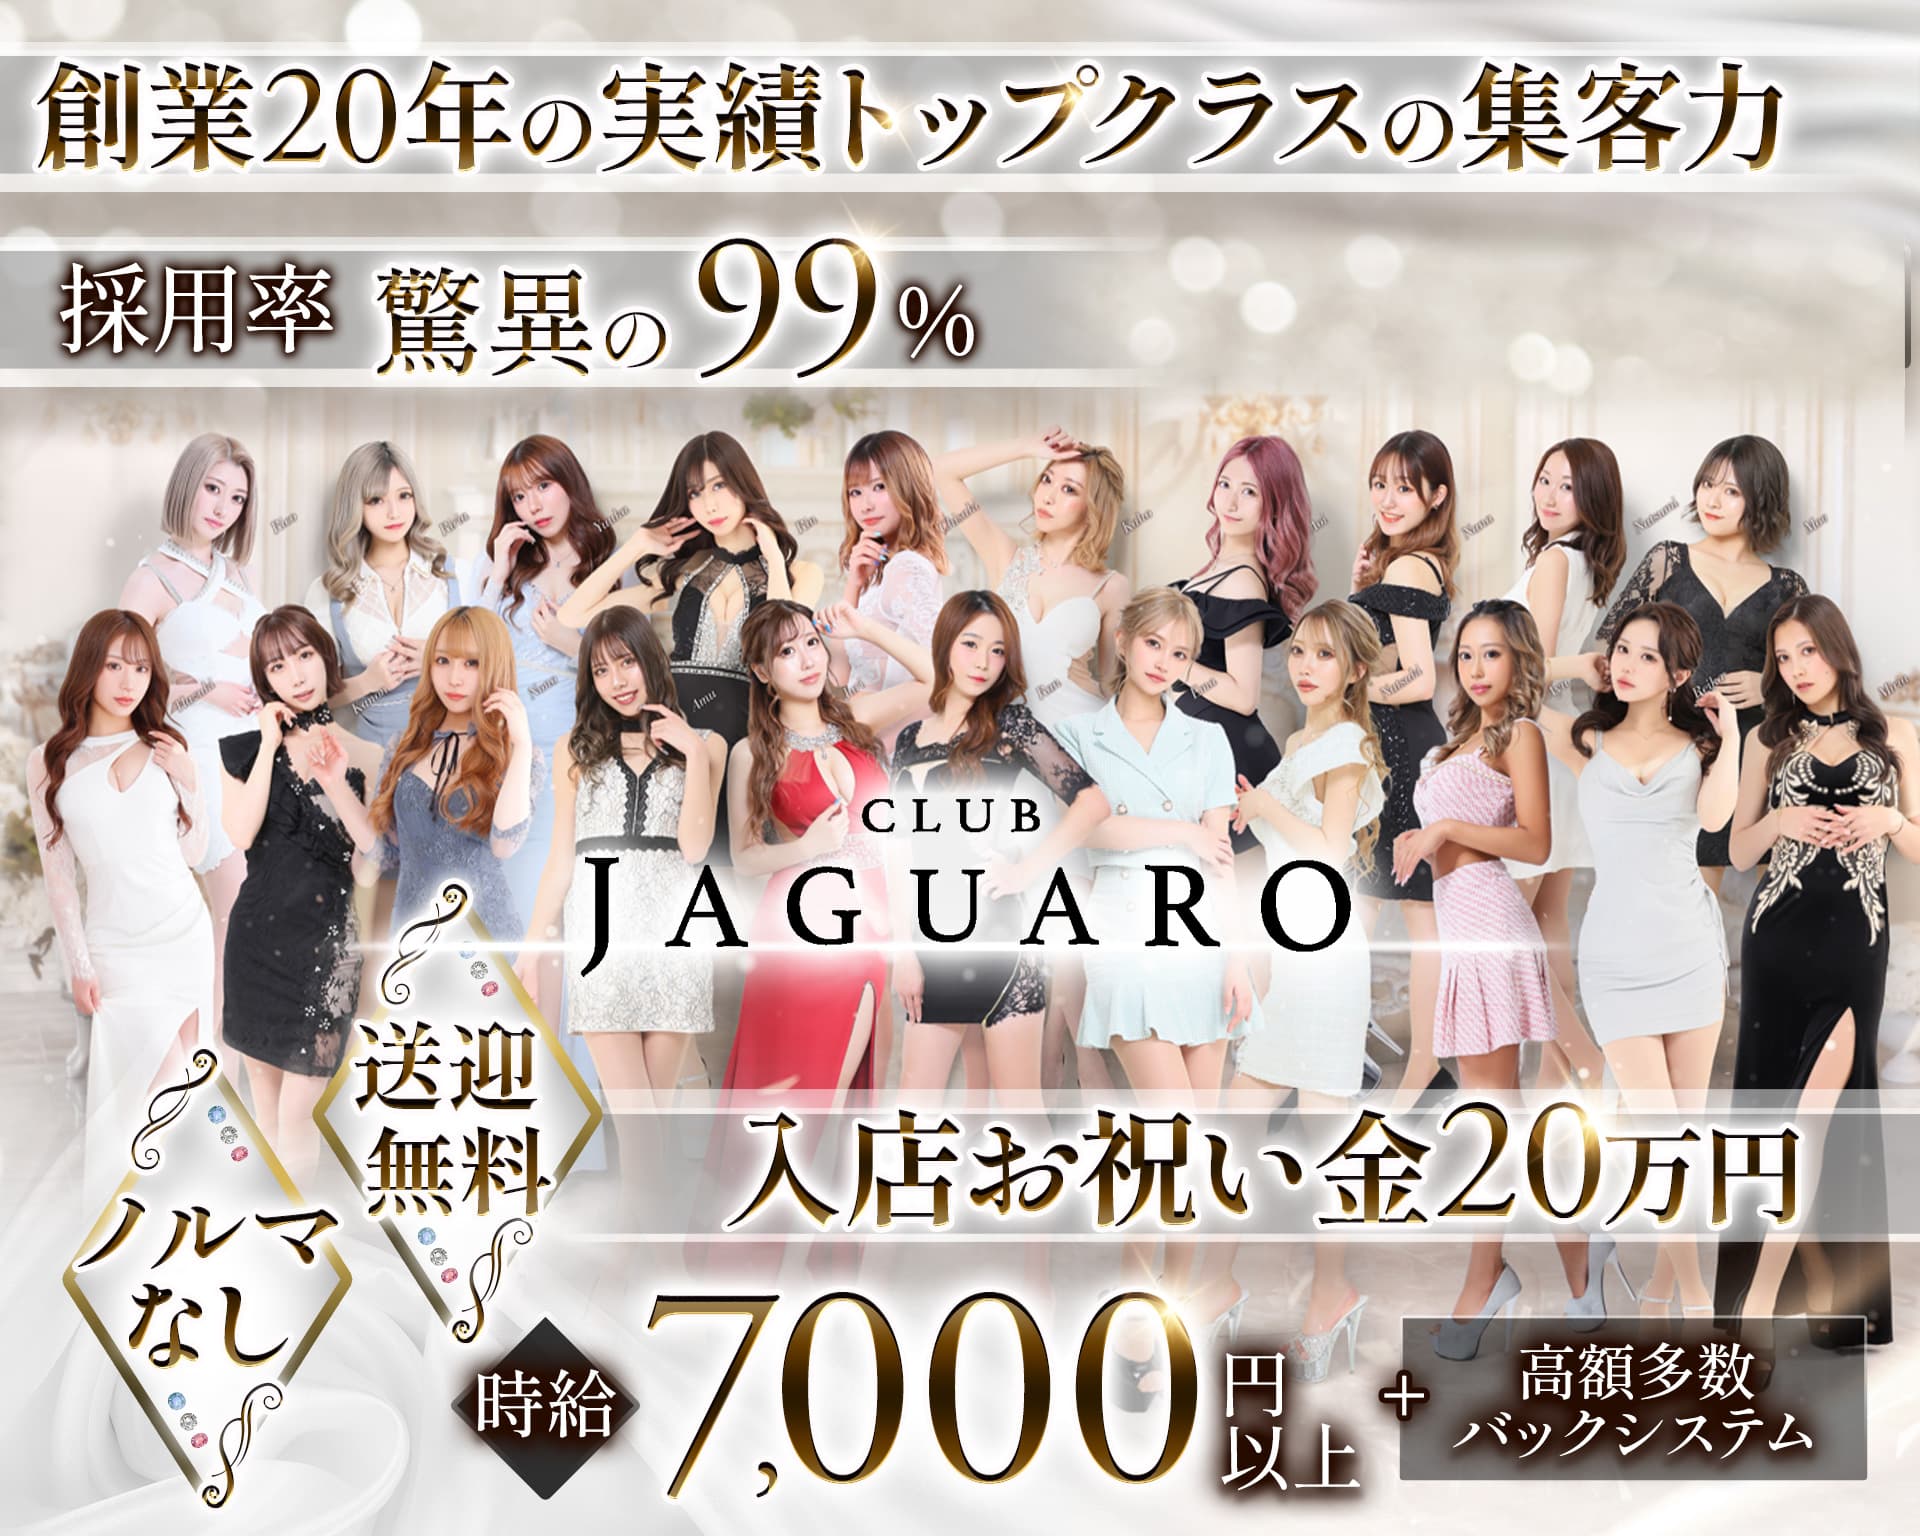 【すすきの】CLUB JAGUARO(ジャガーロ)【公式求人・体入情報】 すすきのニュークラブ TOP画像